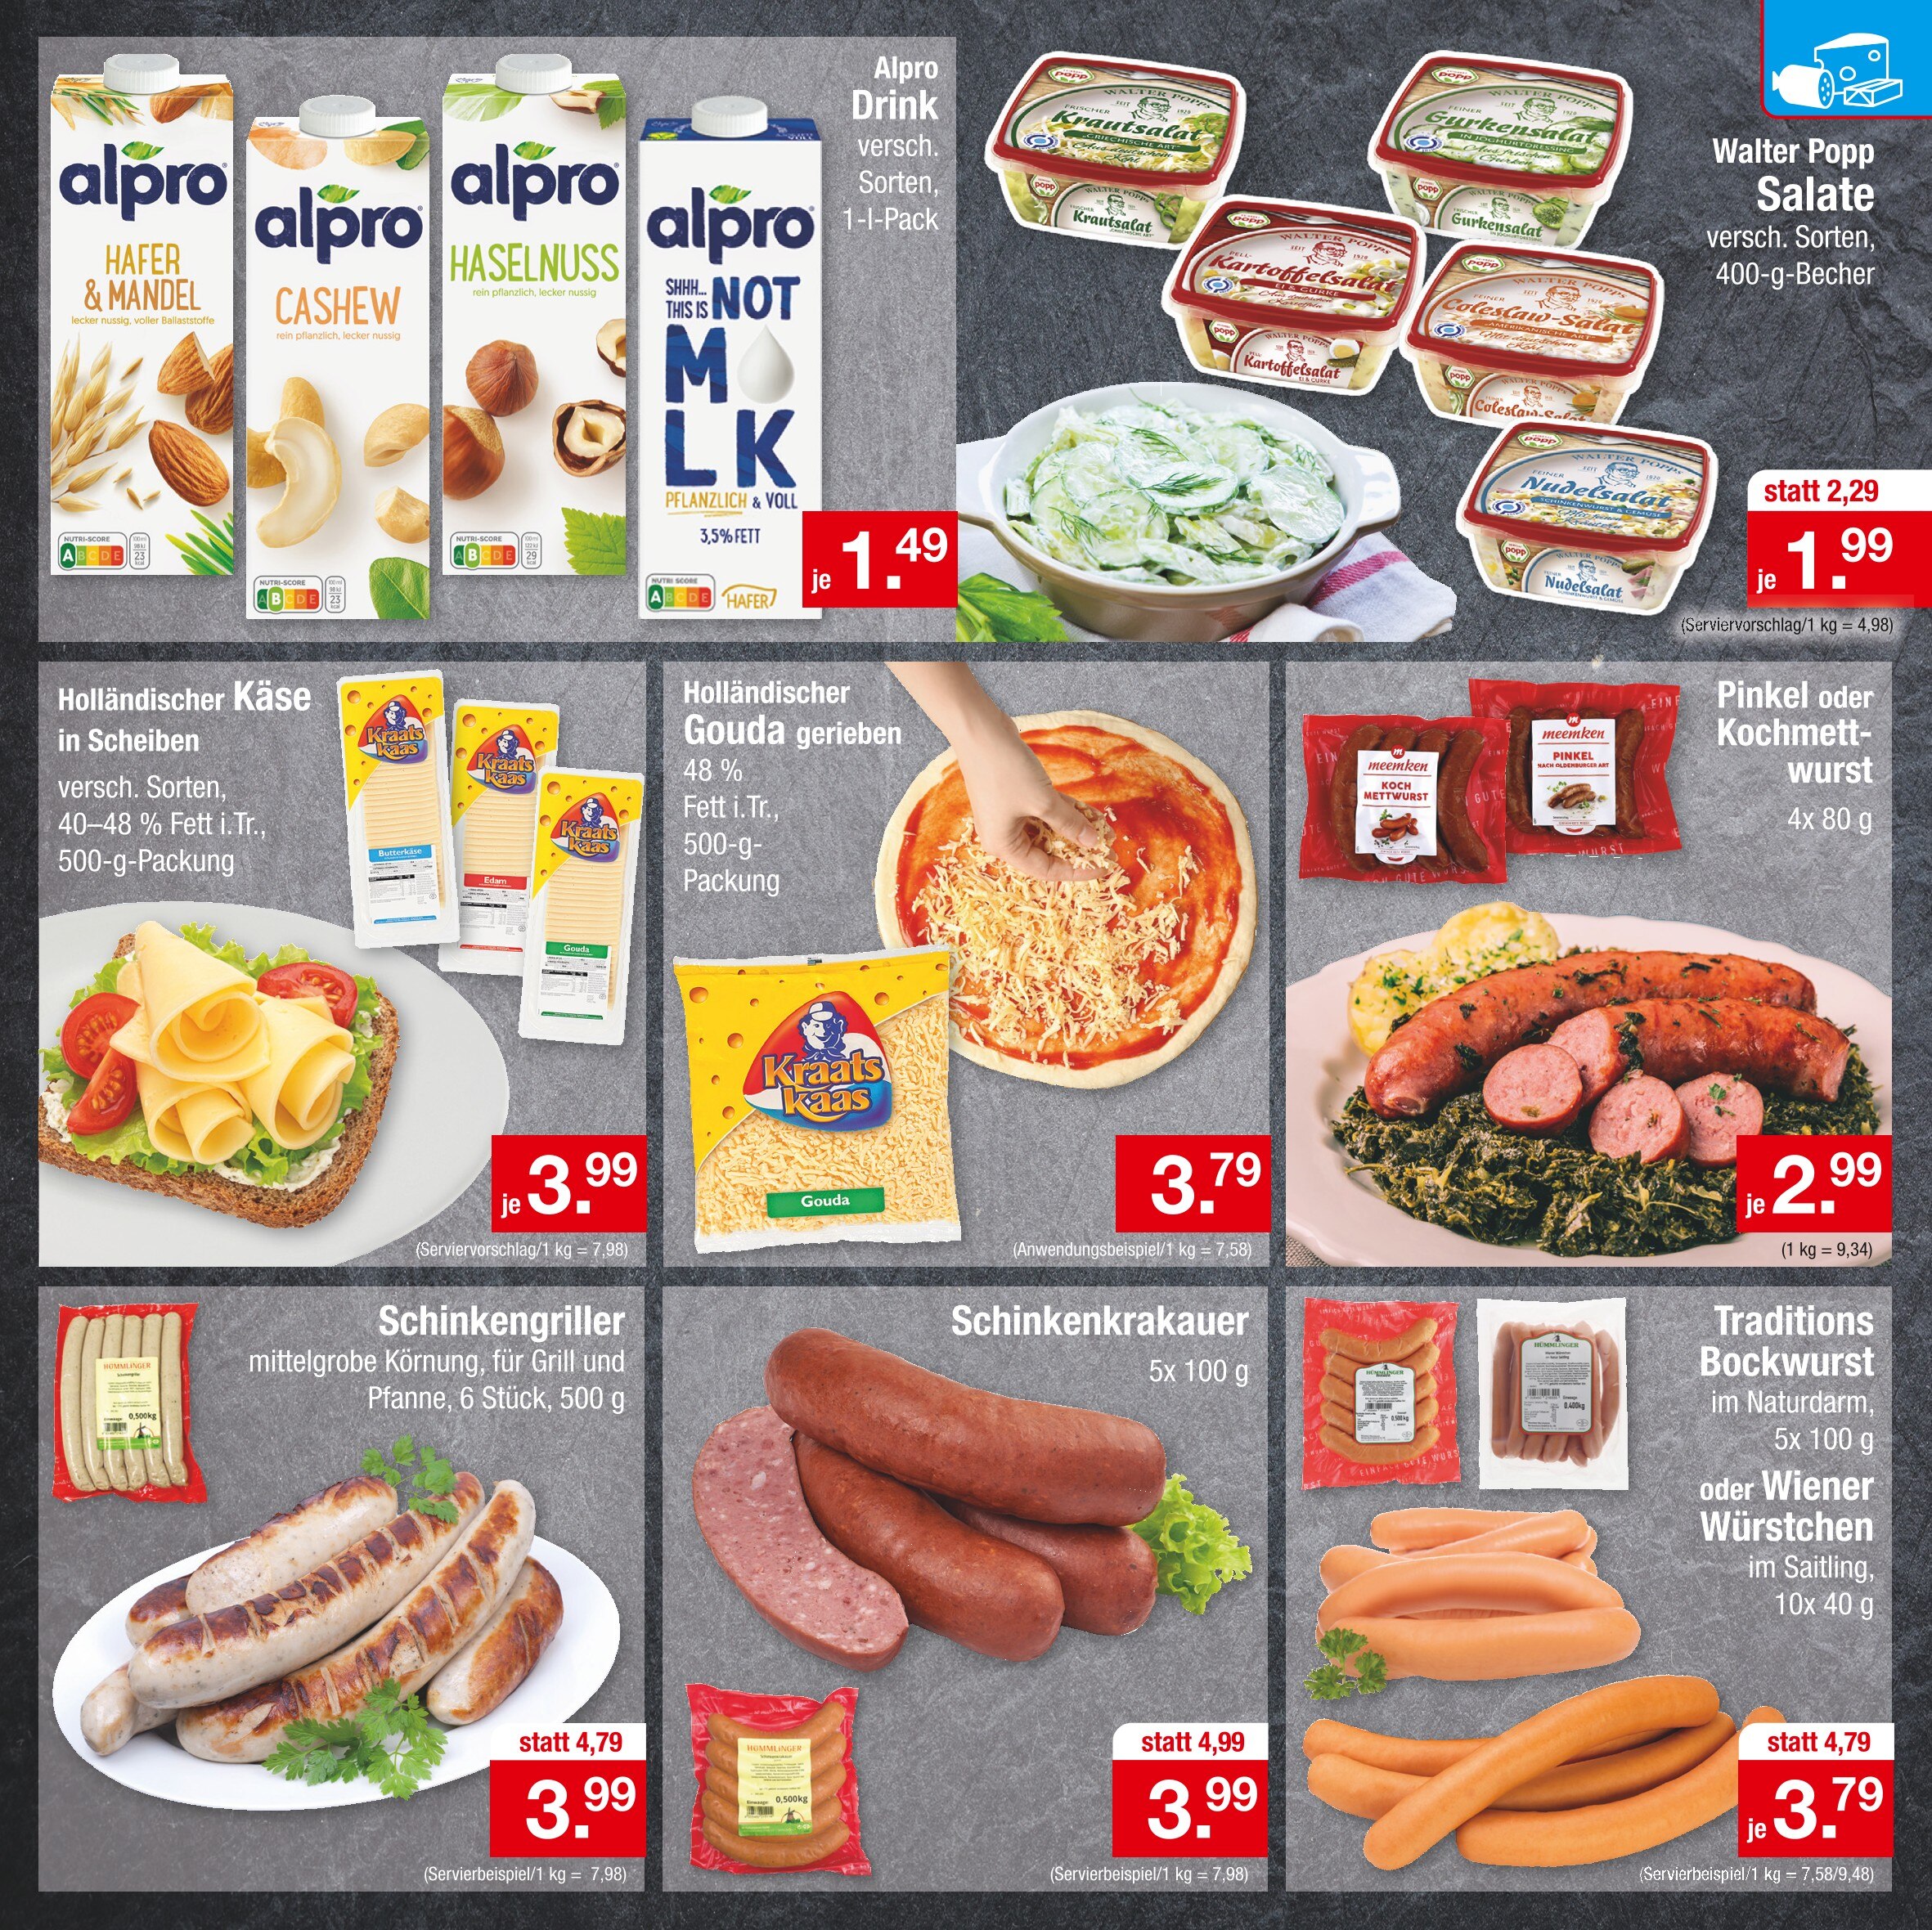 Bratwurst kaufen in Magdeburg - Angebote in Magdeburg günstige